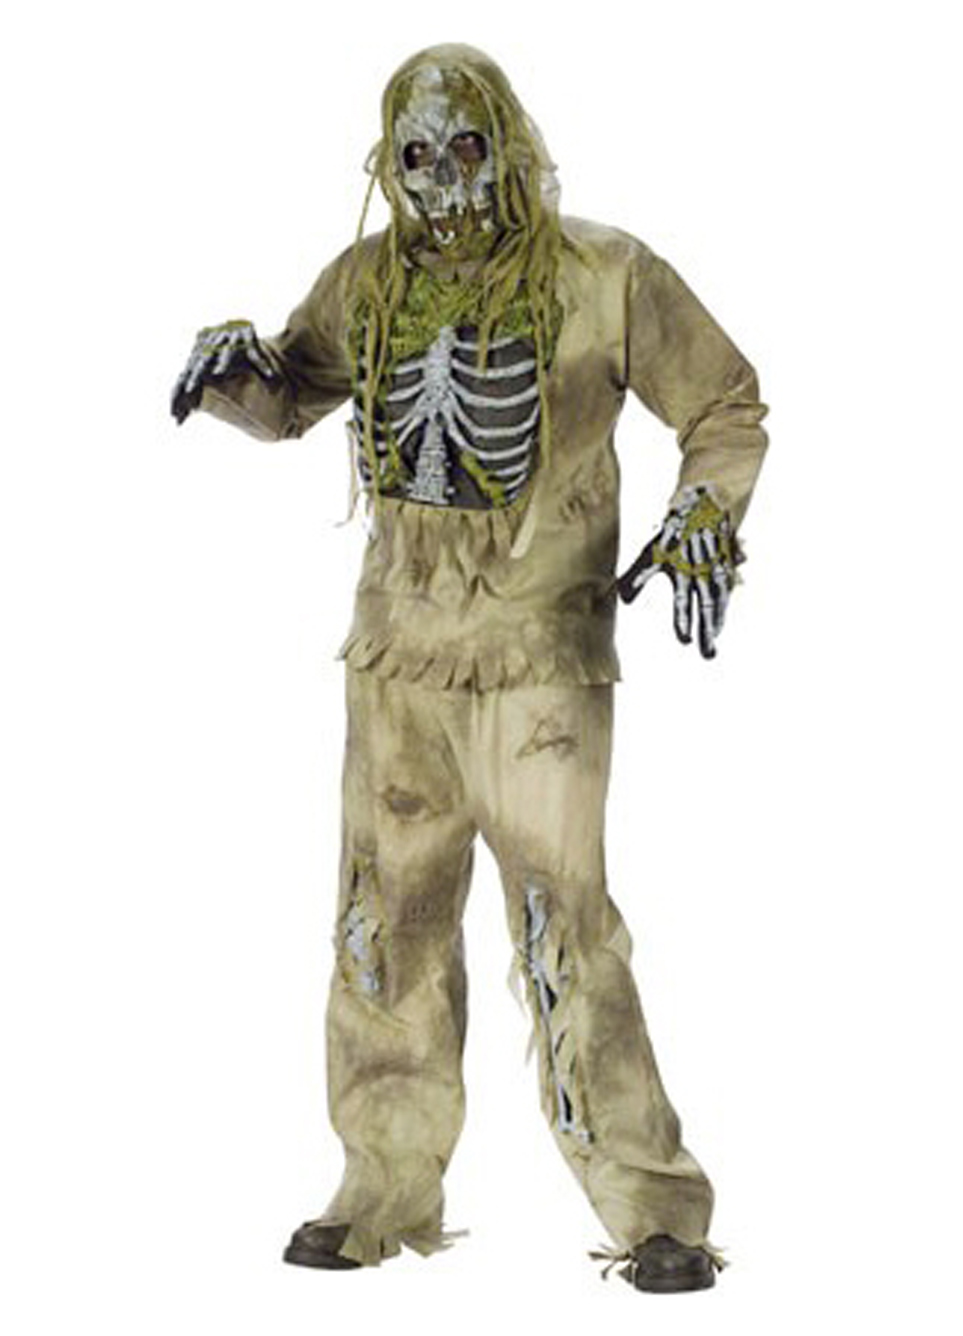 Zwaaien assistent inrichting Zombie pak kostuum skelet moeras halloween kopen? - FeestinjeBeest.nl